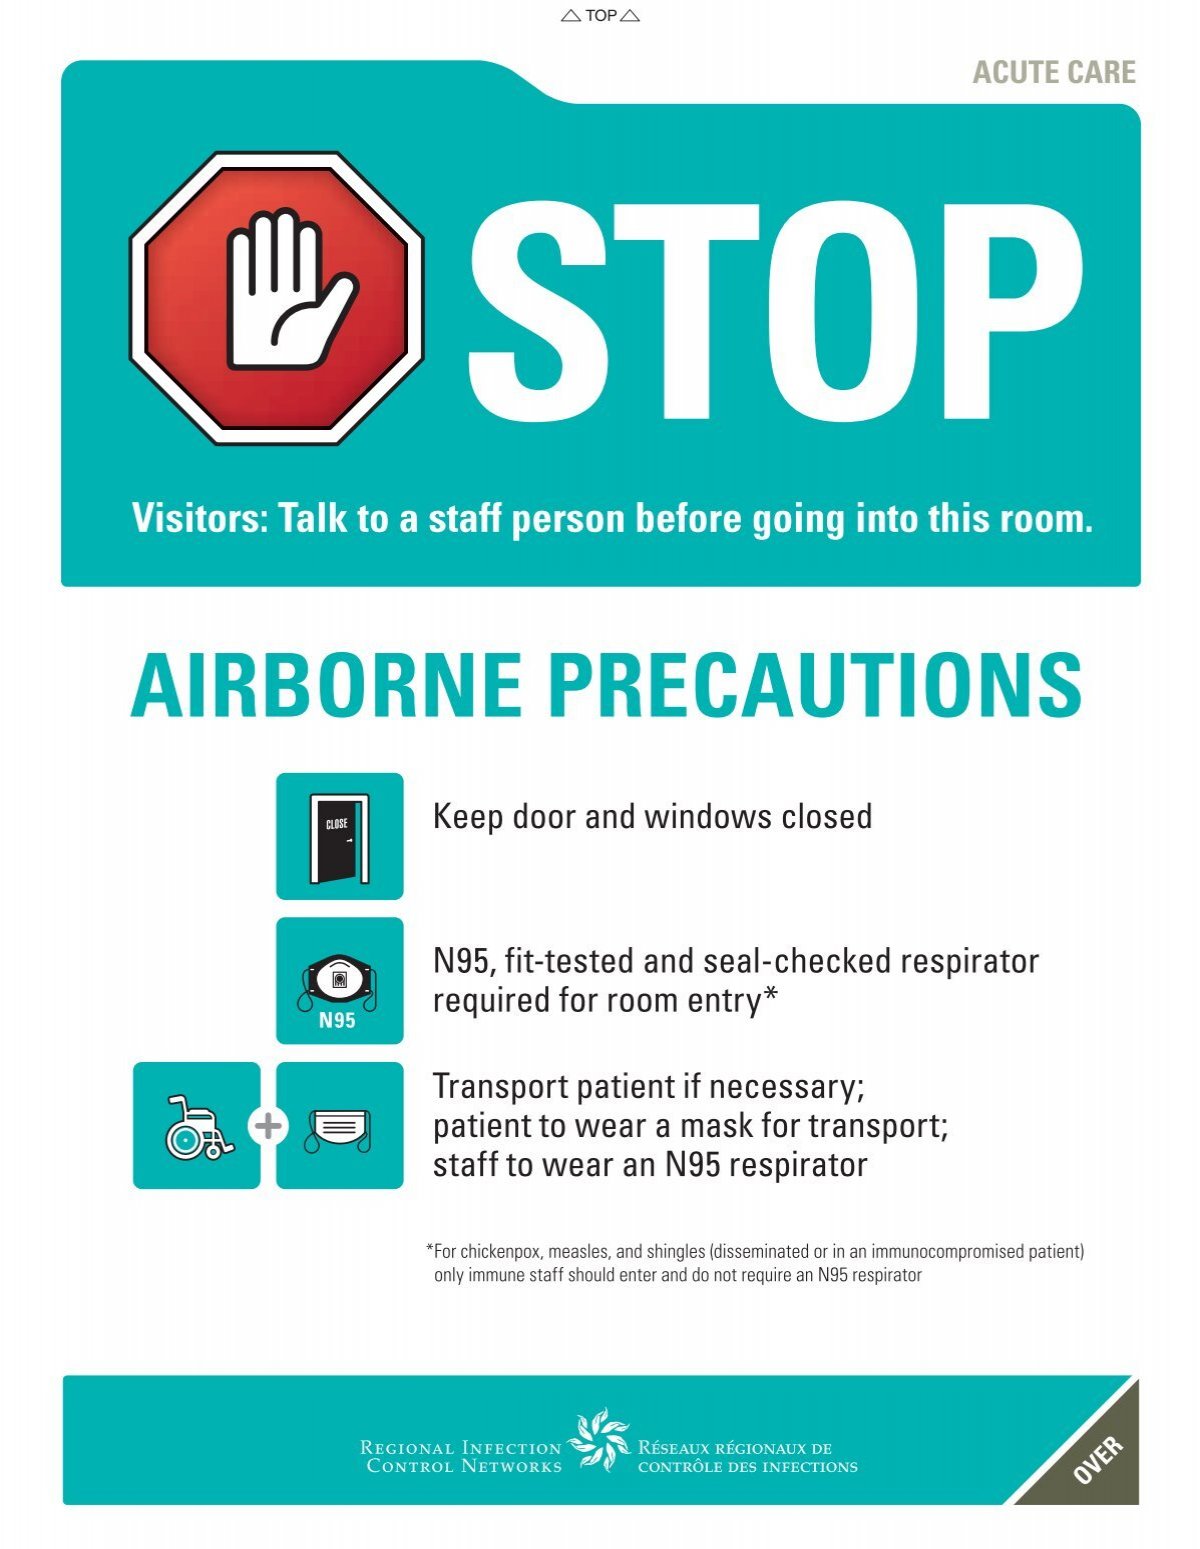 acute-care-airborne-precautions